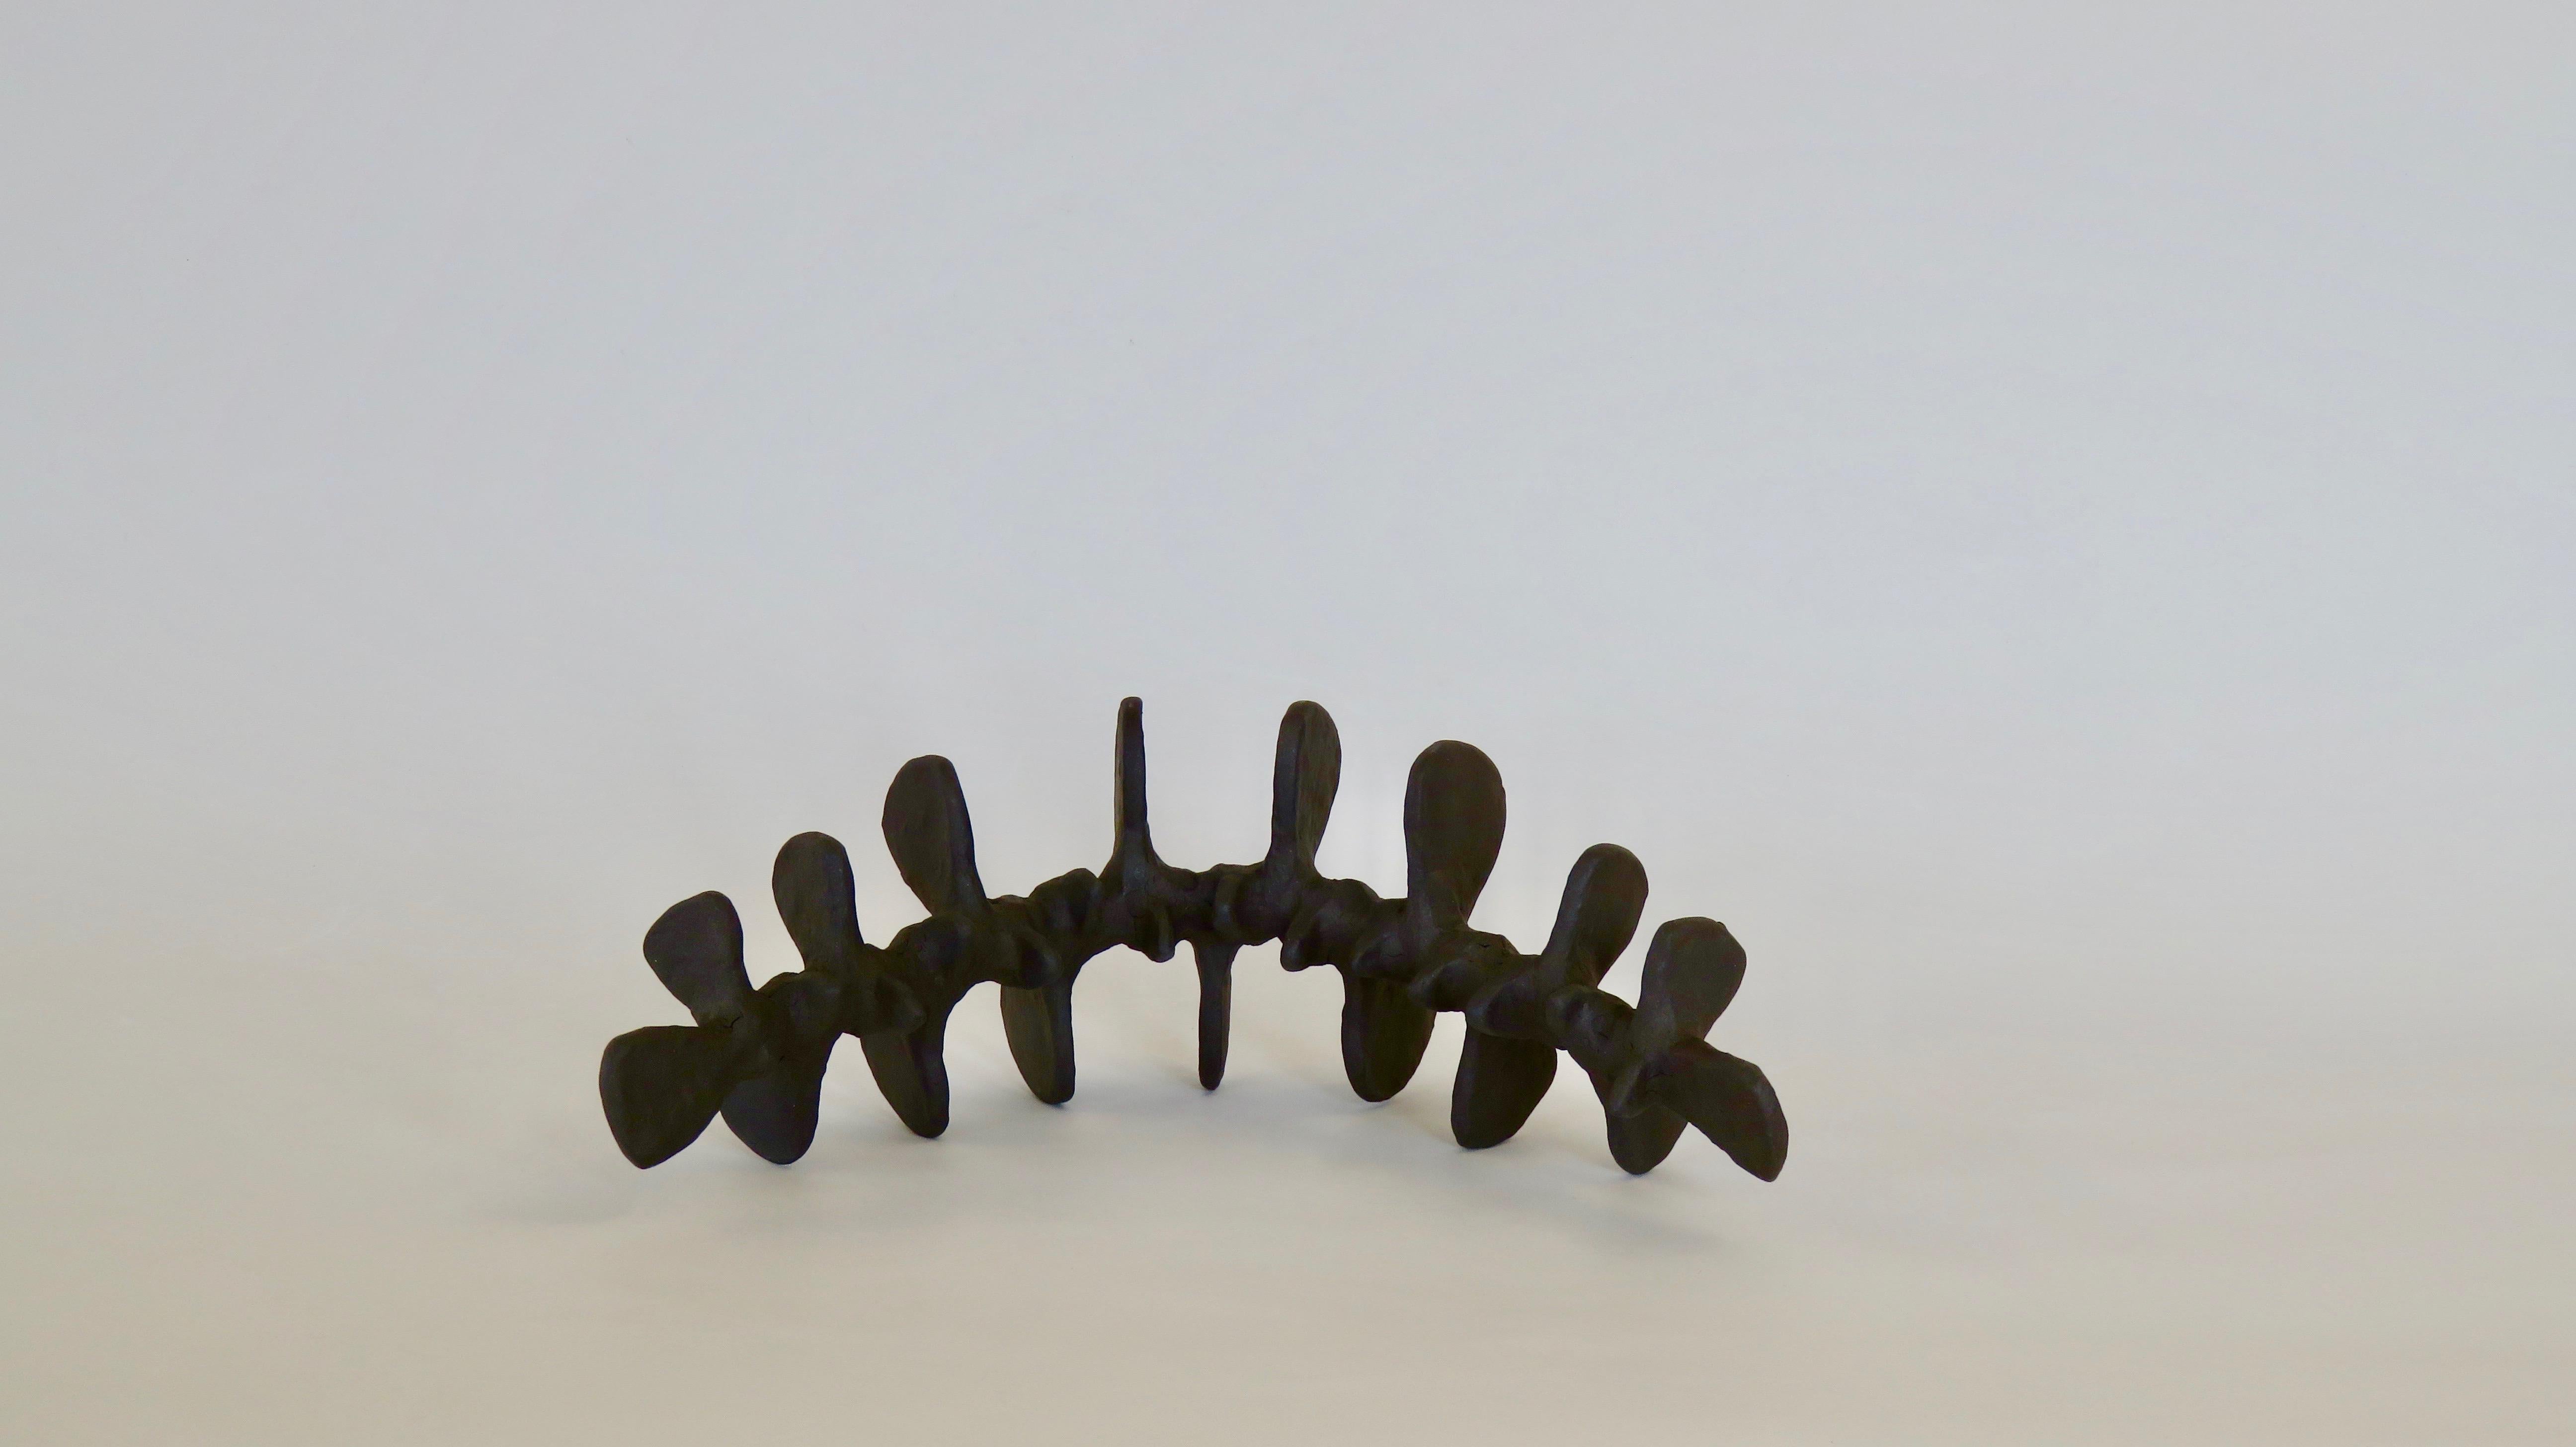 Deep Brown Spine-Like Ceramic Sculpture in Brown Stoneware, Hand Built (Handgefertigt)